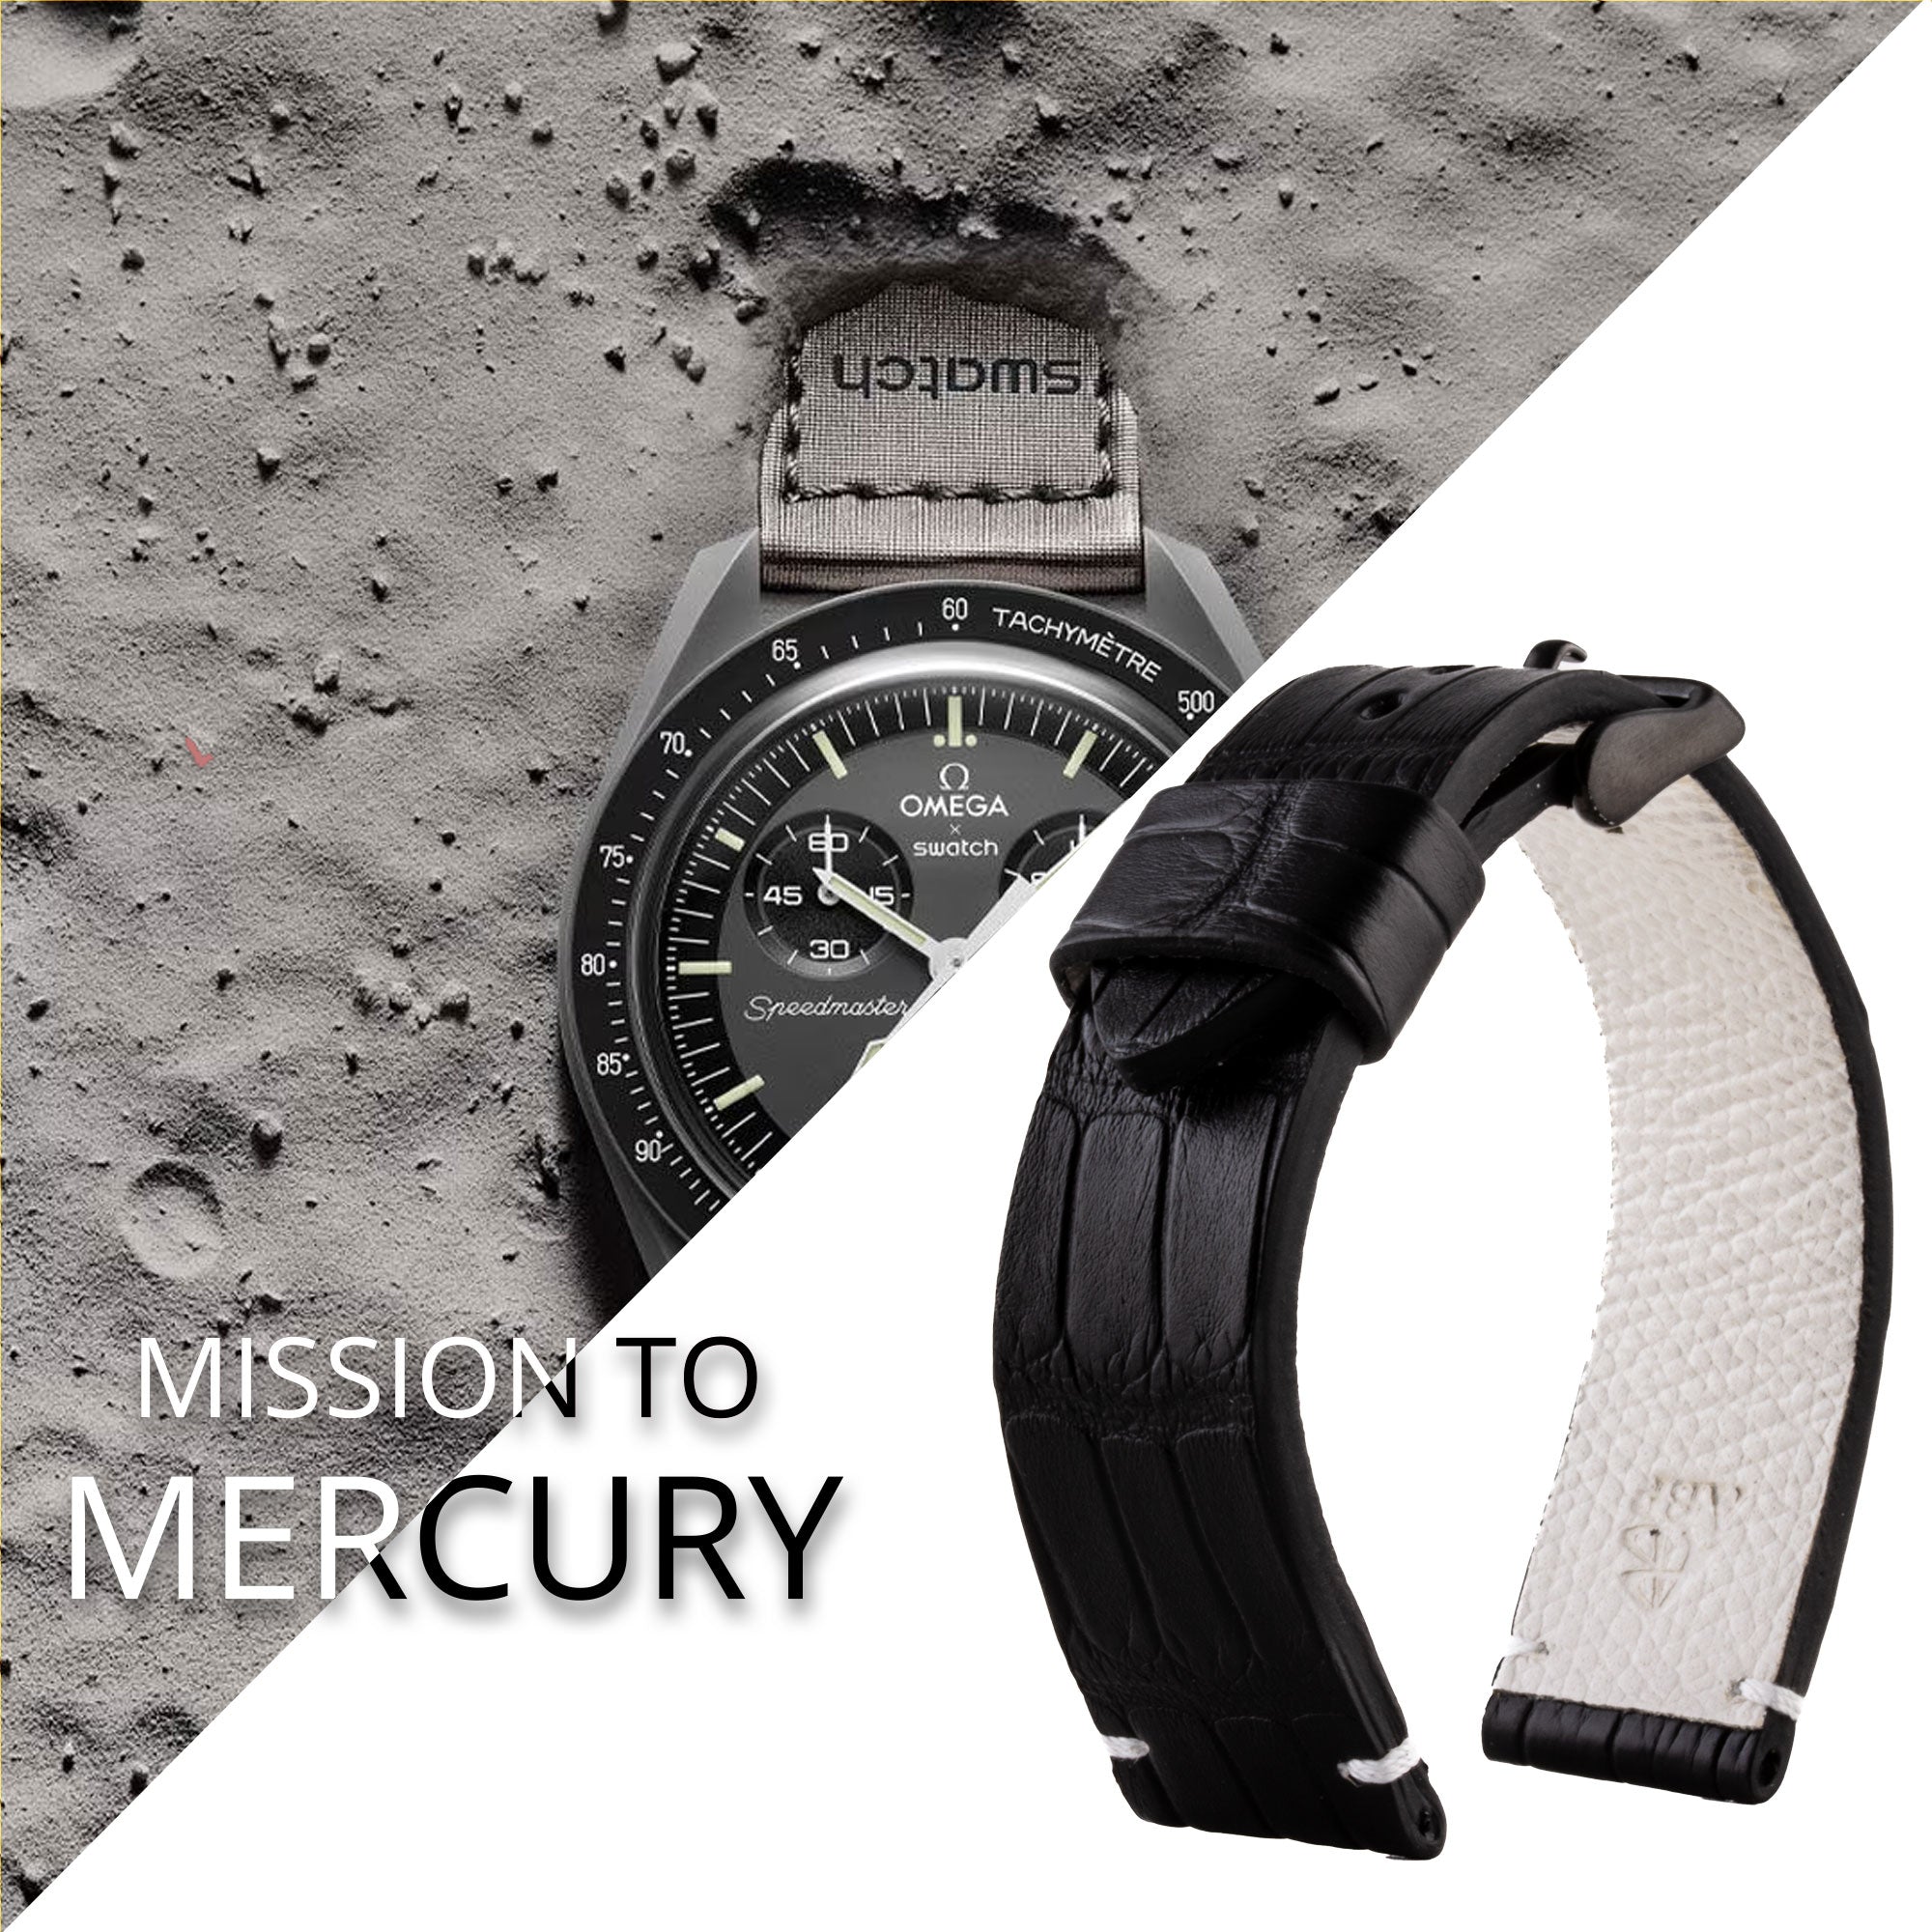 Tribute to MoonSwatch Omega X Swatch - Bracelet de montre cuir "Mission to..." - Alligator couture contrastée (noir, bleu, rouge...)